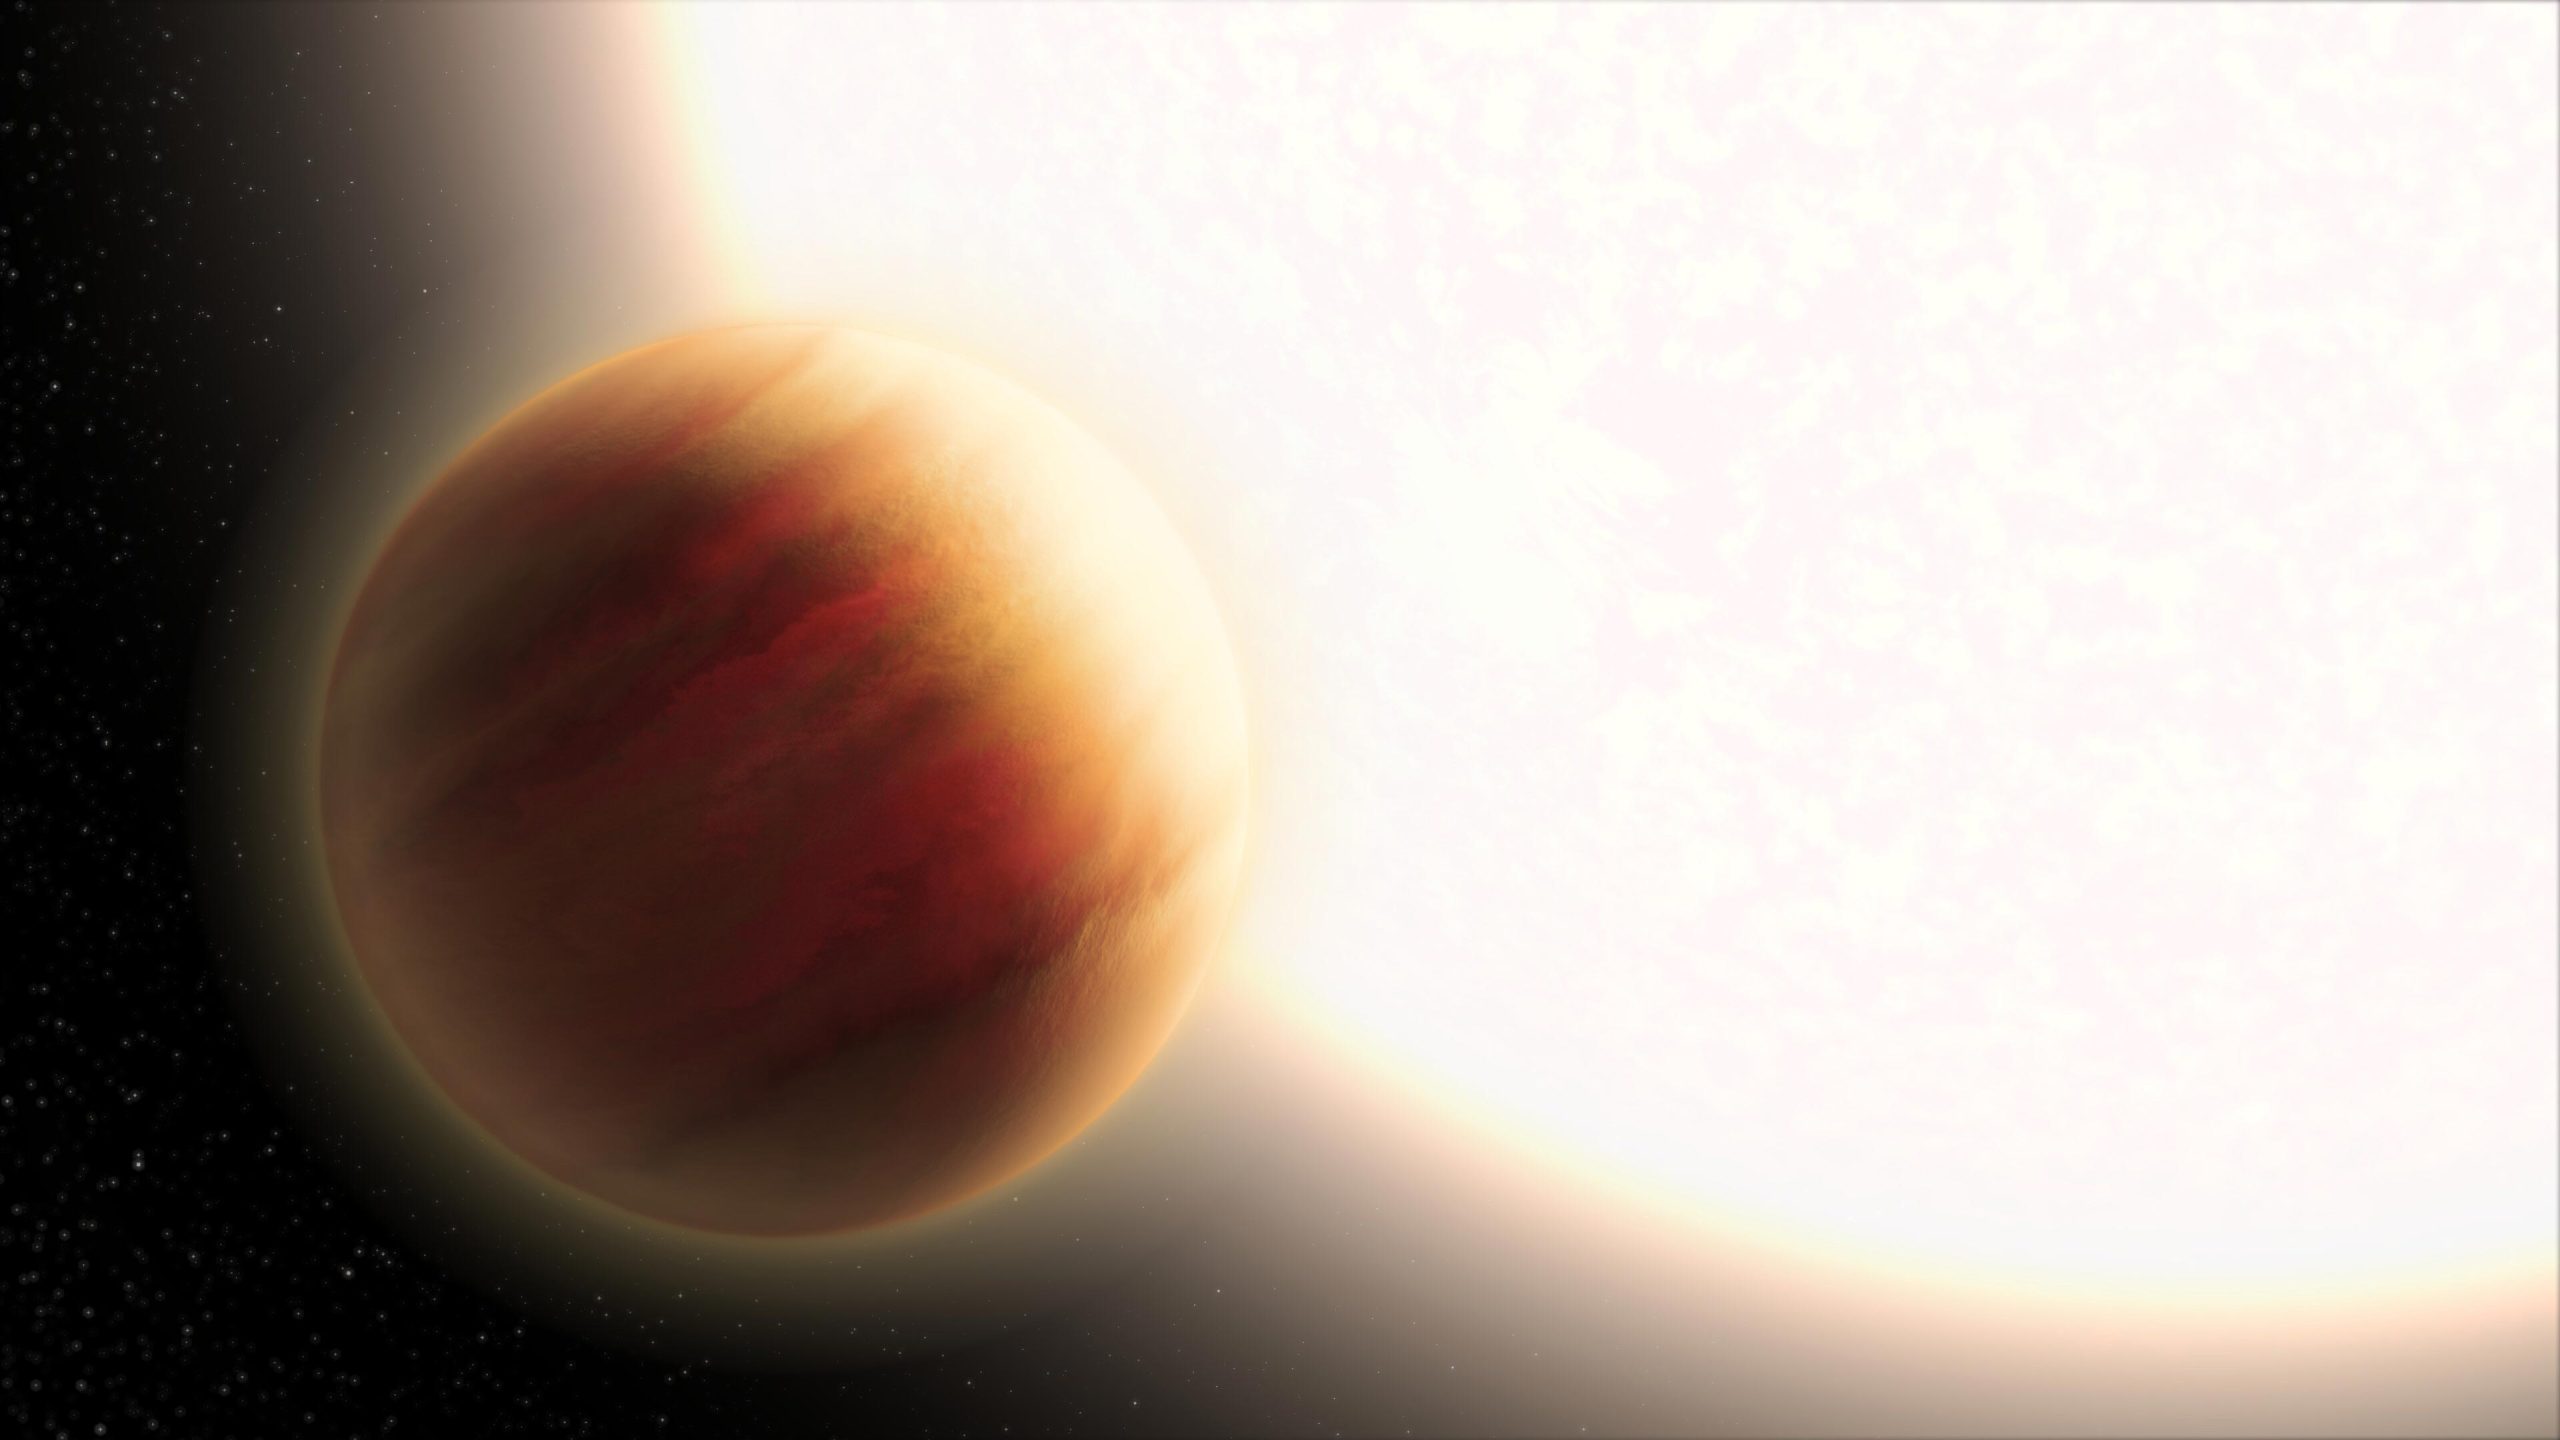 Vedci merajú atmosféru planéty v inej slnečnej sústave, vzdialenej 340 svetelných rokov